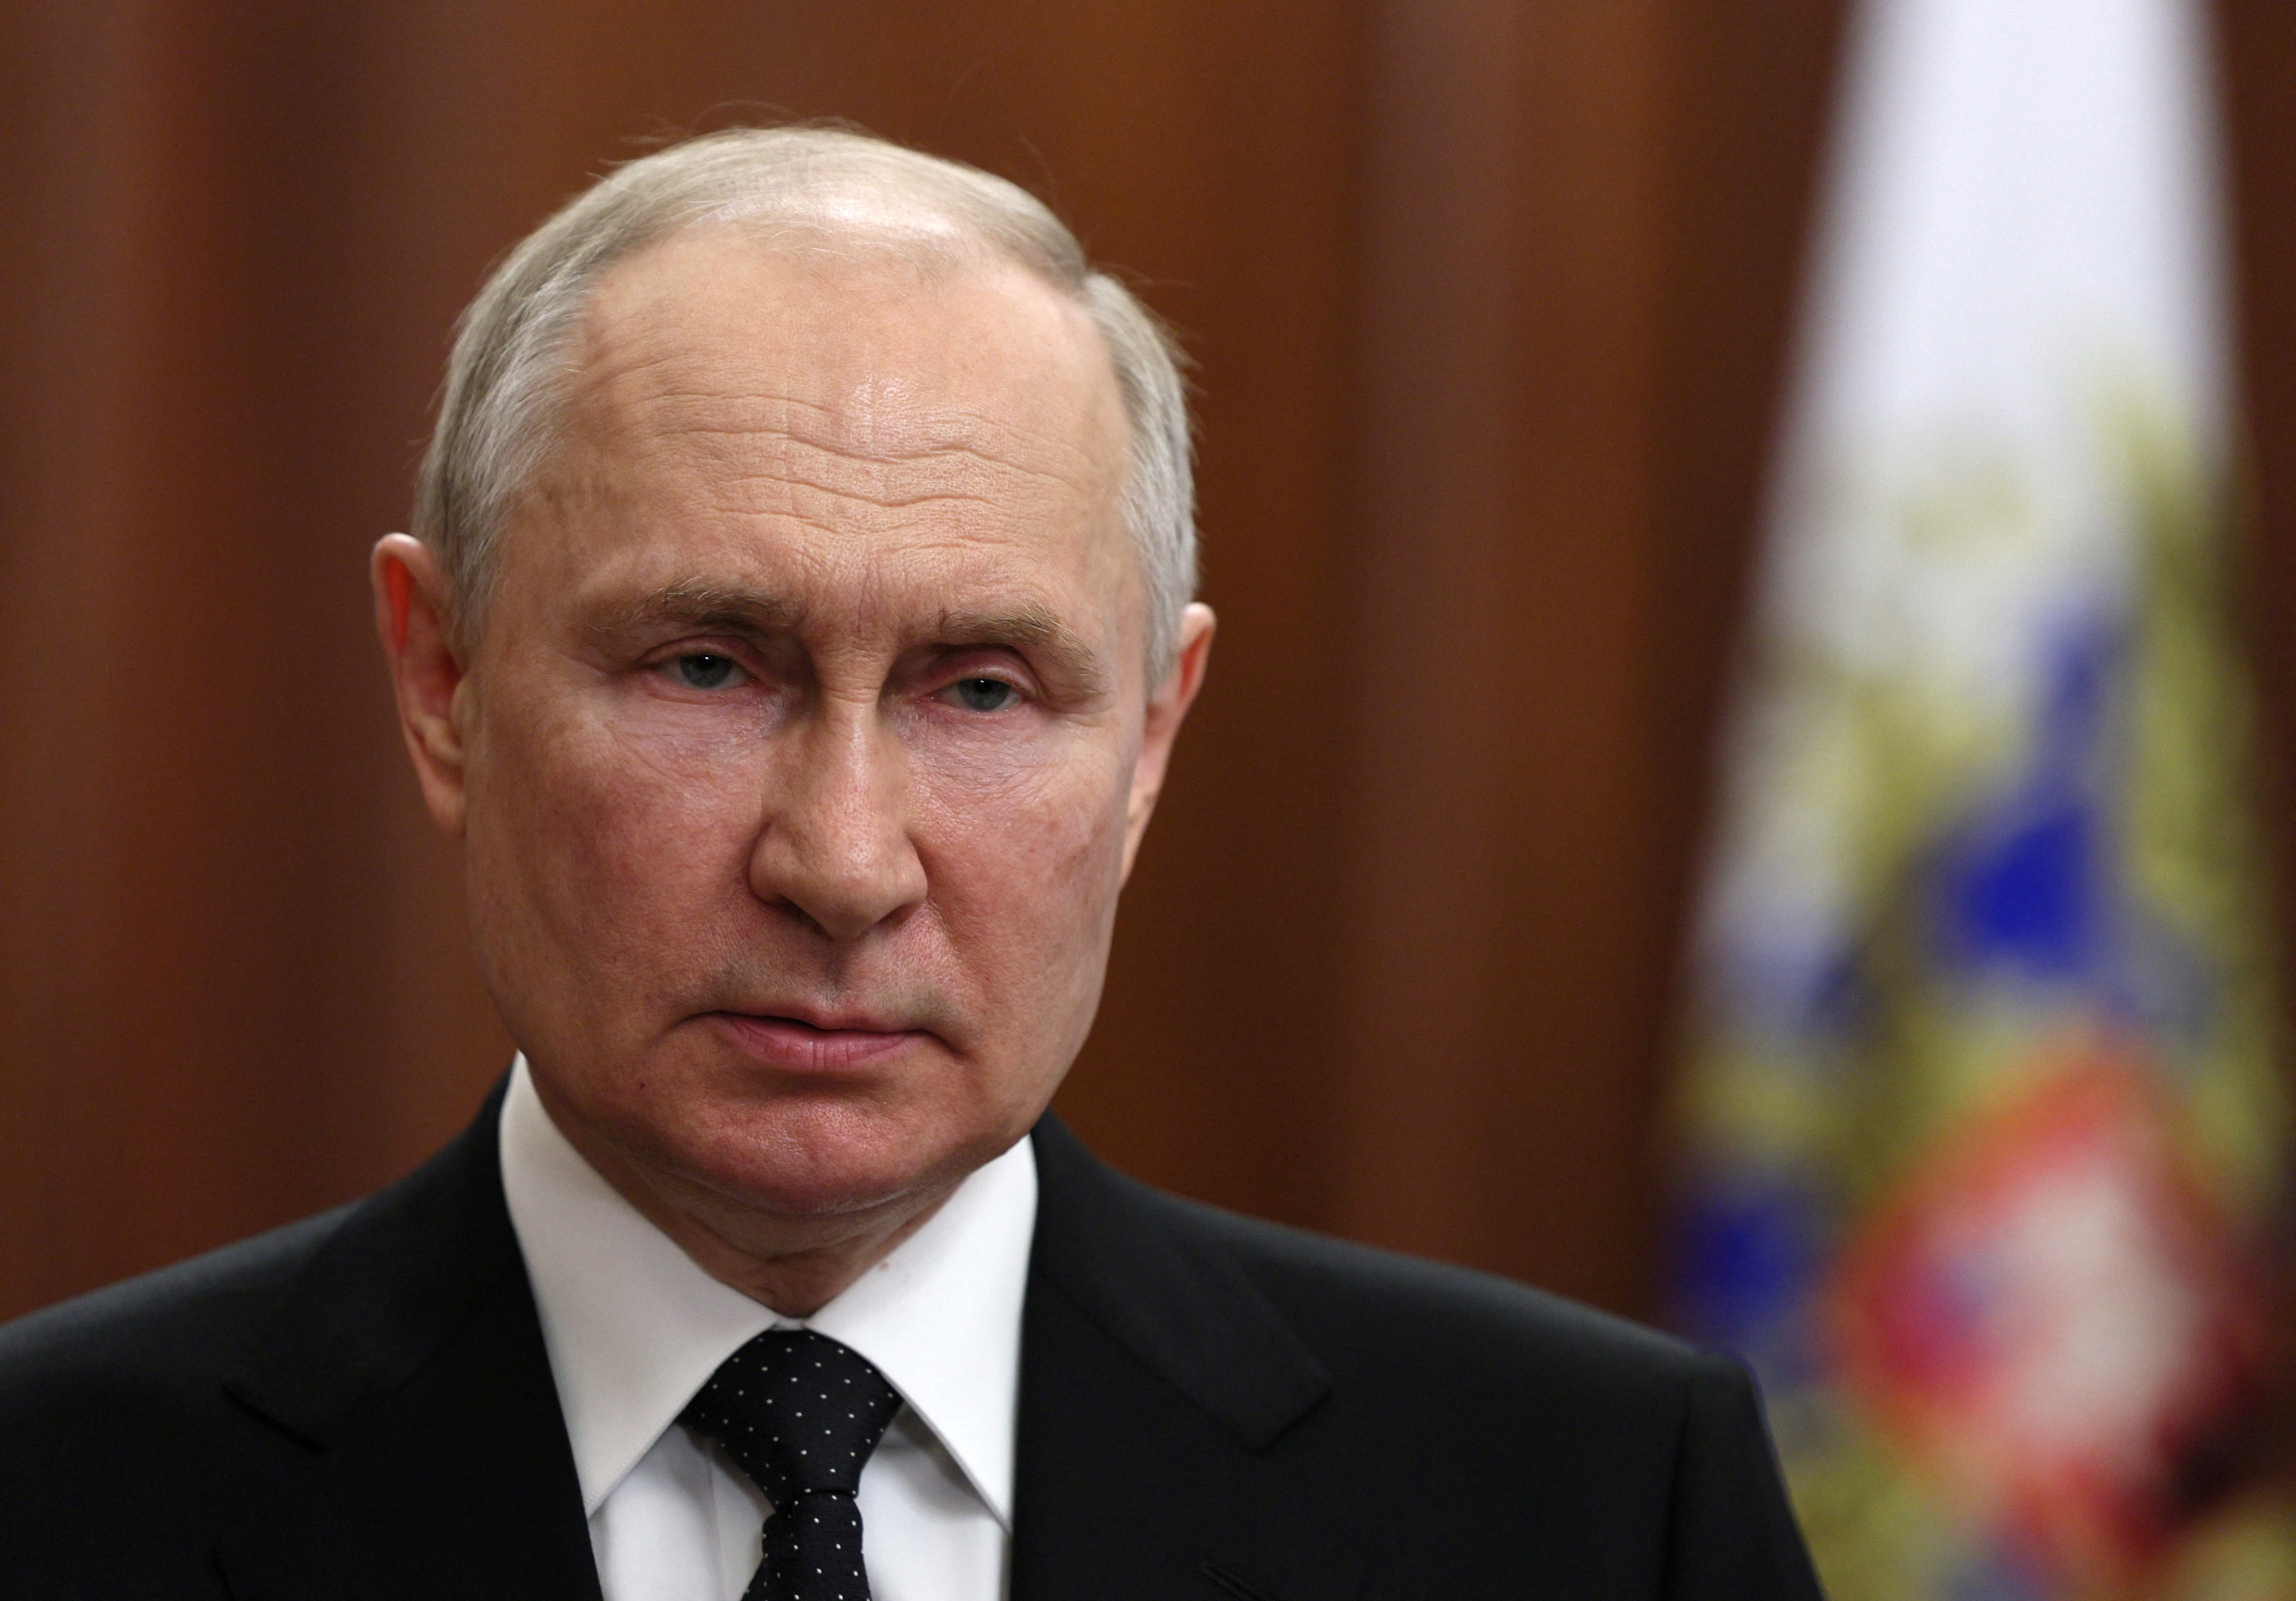 Putin admitió que la situación en la ciudad rusa tomada por el Grupo Wagner es “difícil” y amenazó con responder “duramente”. (REUTERS)